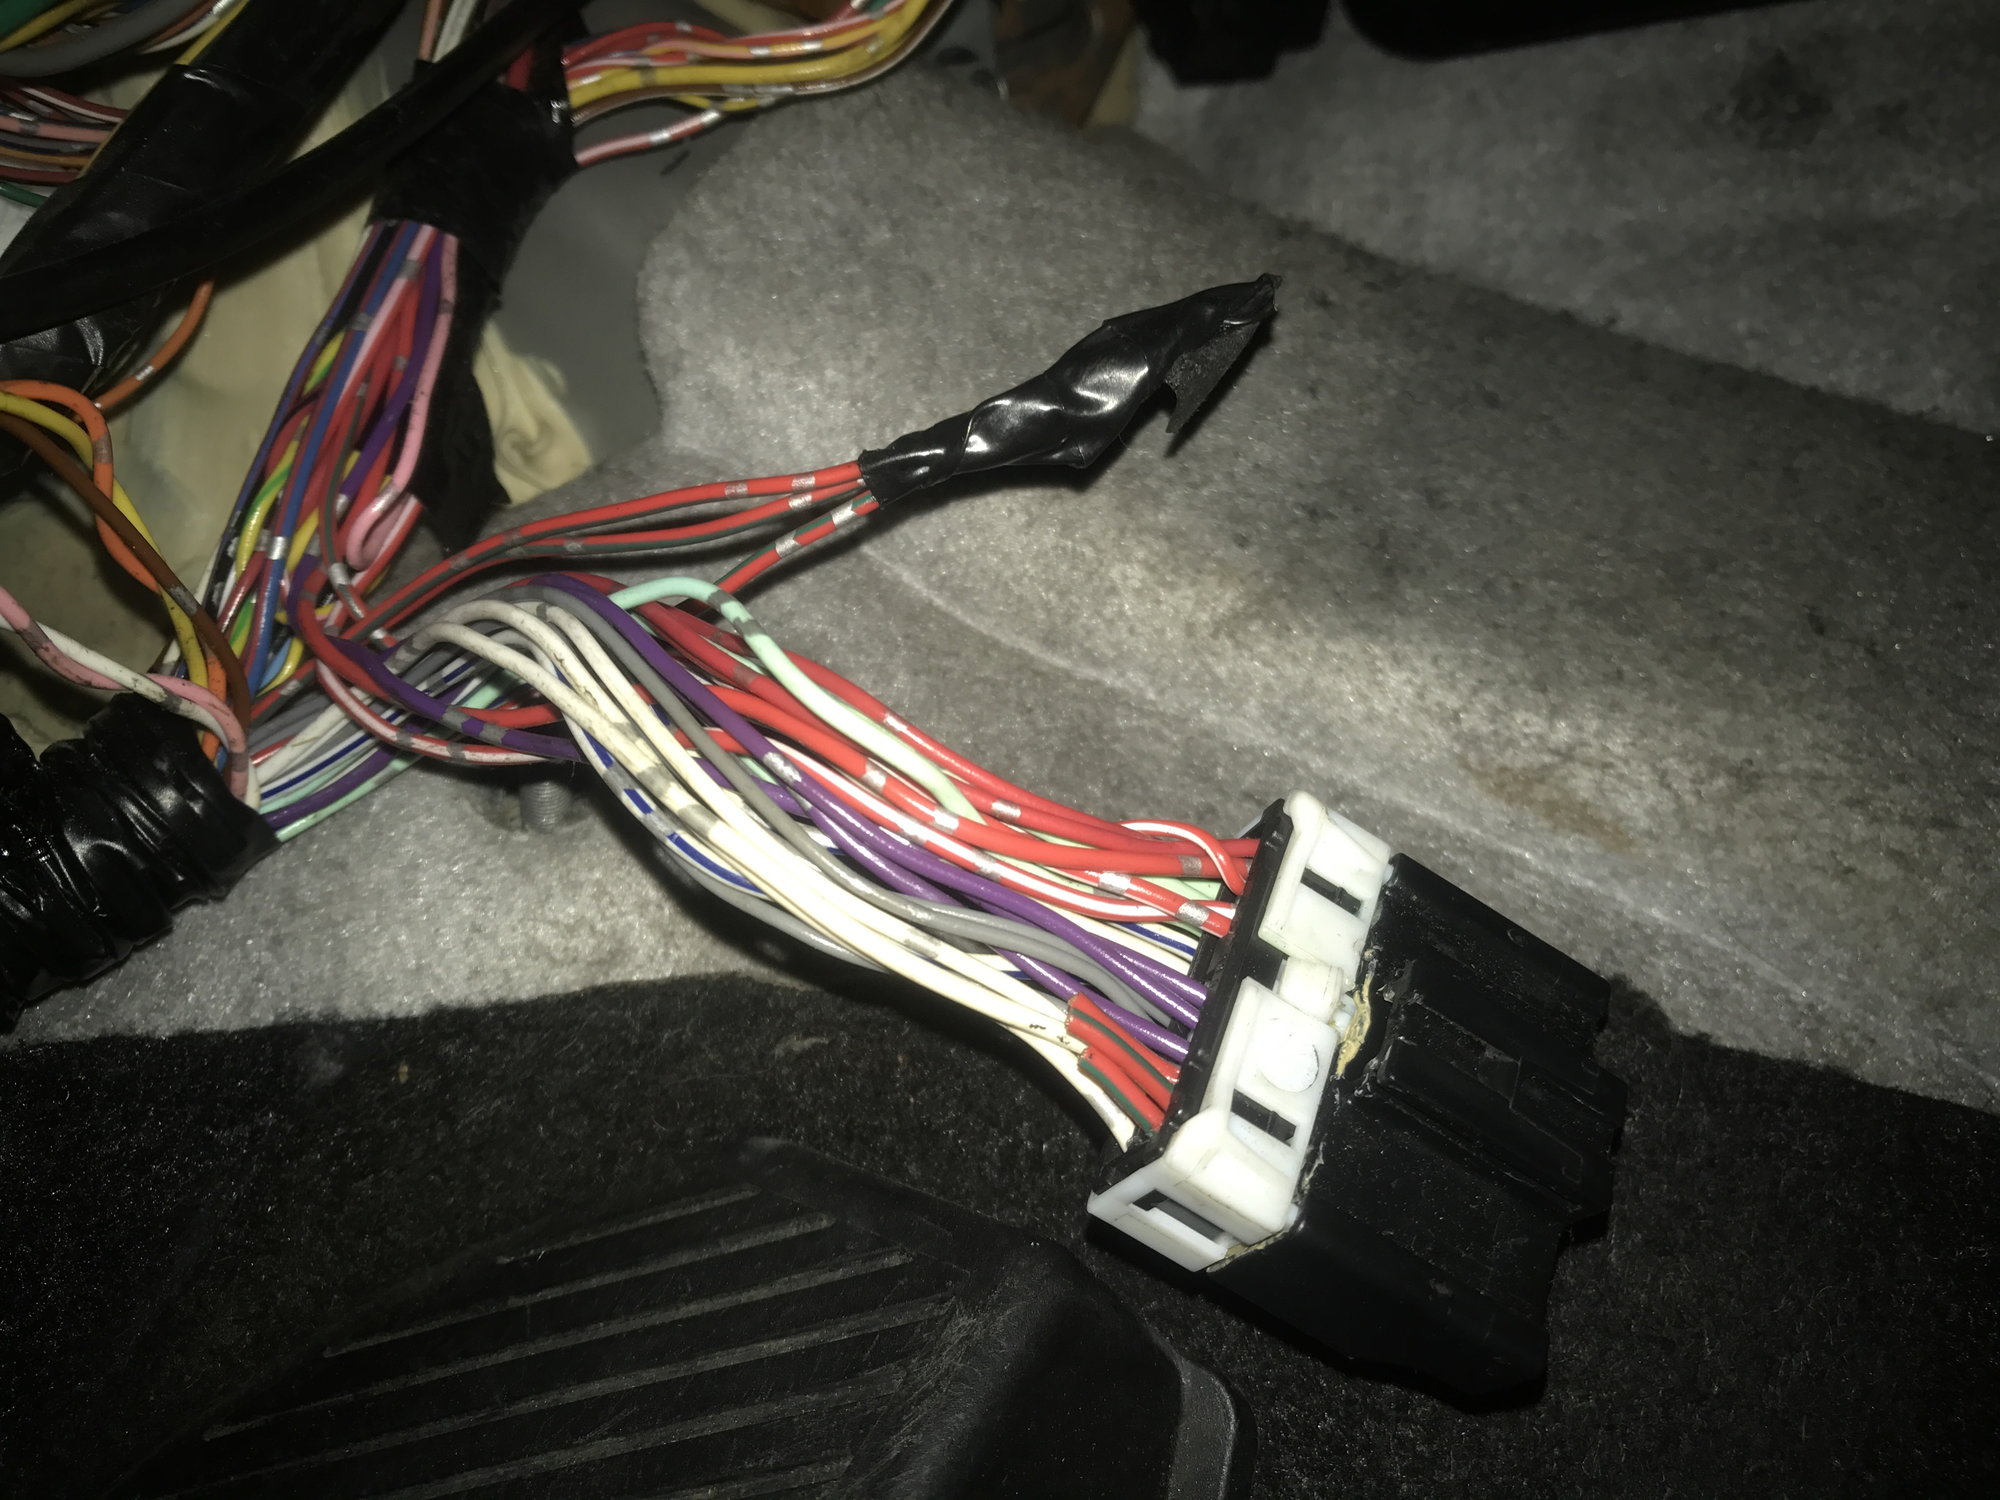 Help identifying wire harness/wires - EvolutionM - Mitsubishi Lancer